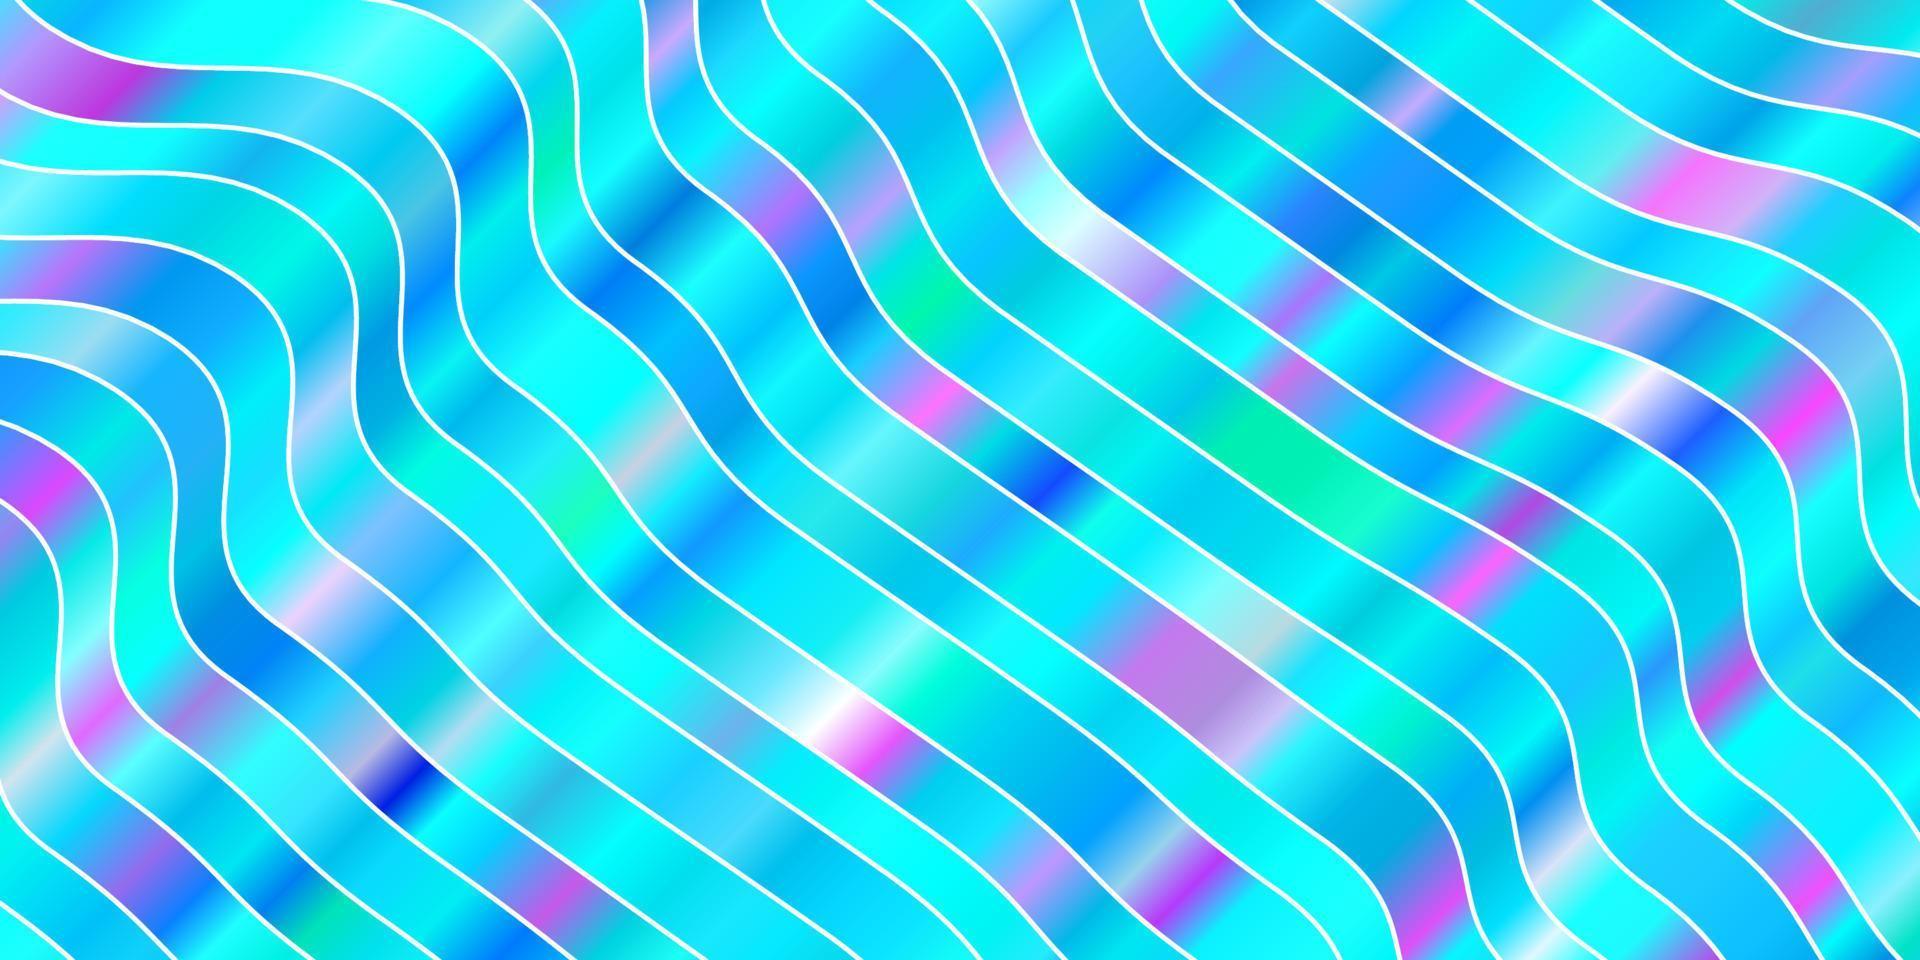 hellrosa, blaue Vektorschablone mit gekrümmten Linien. vektor